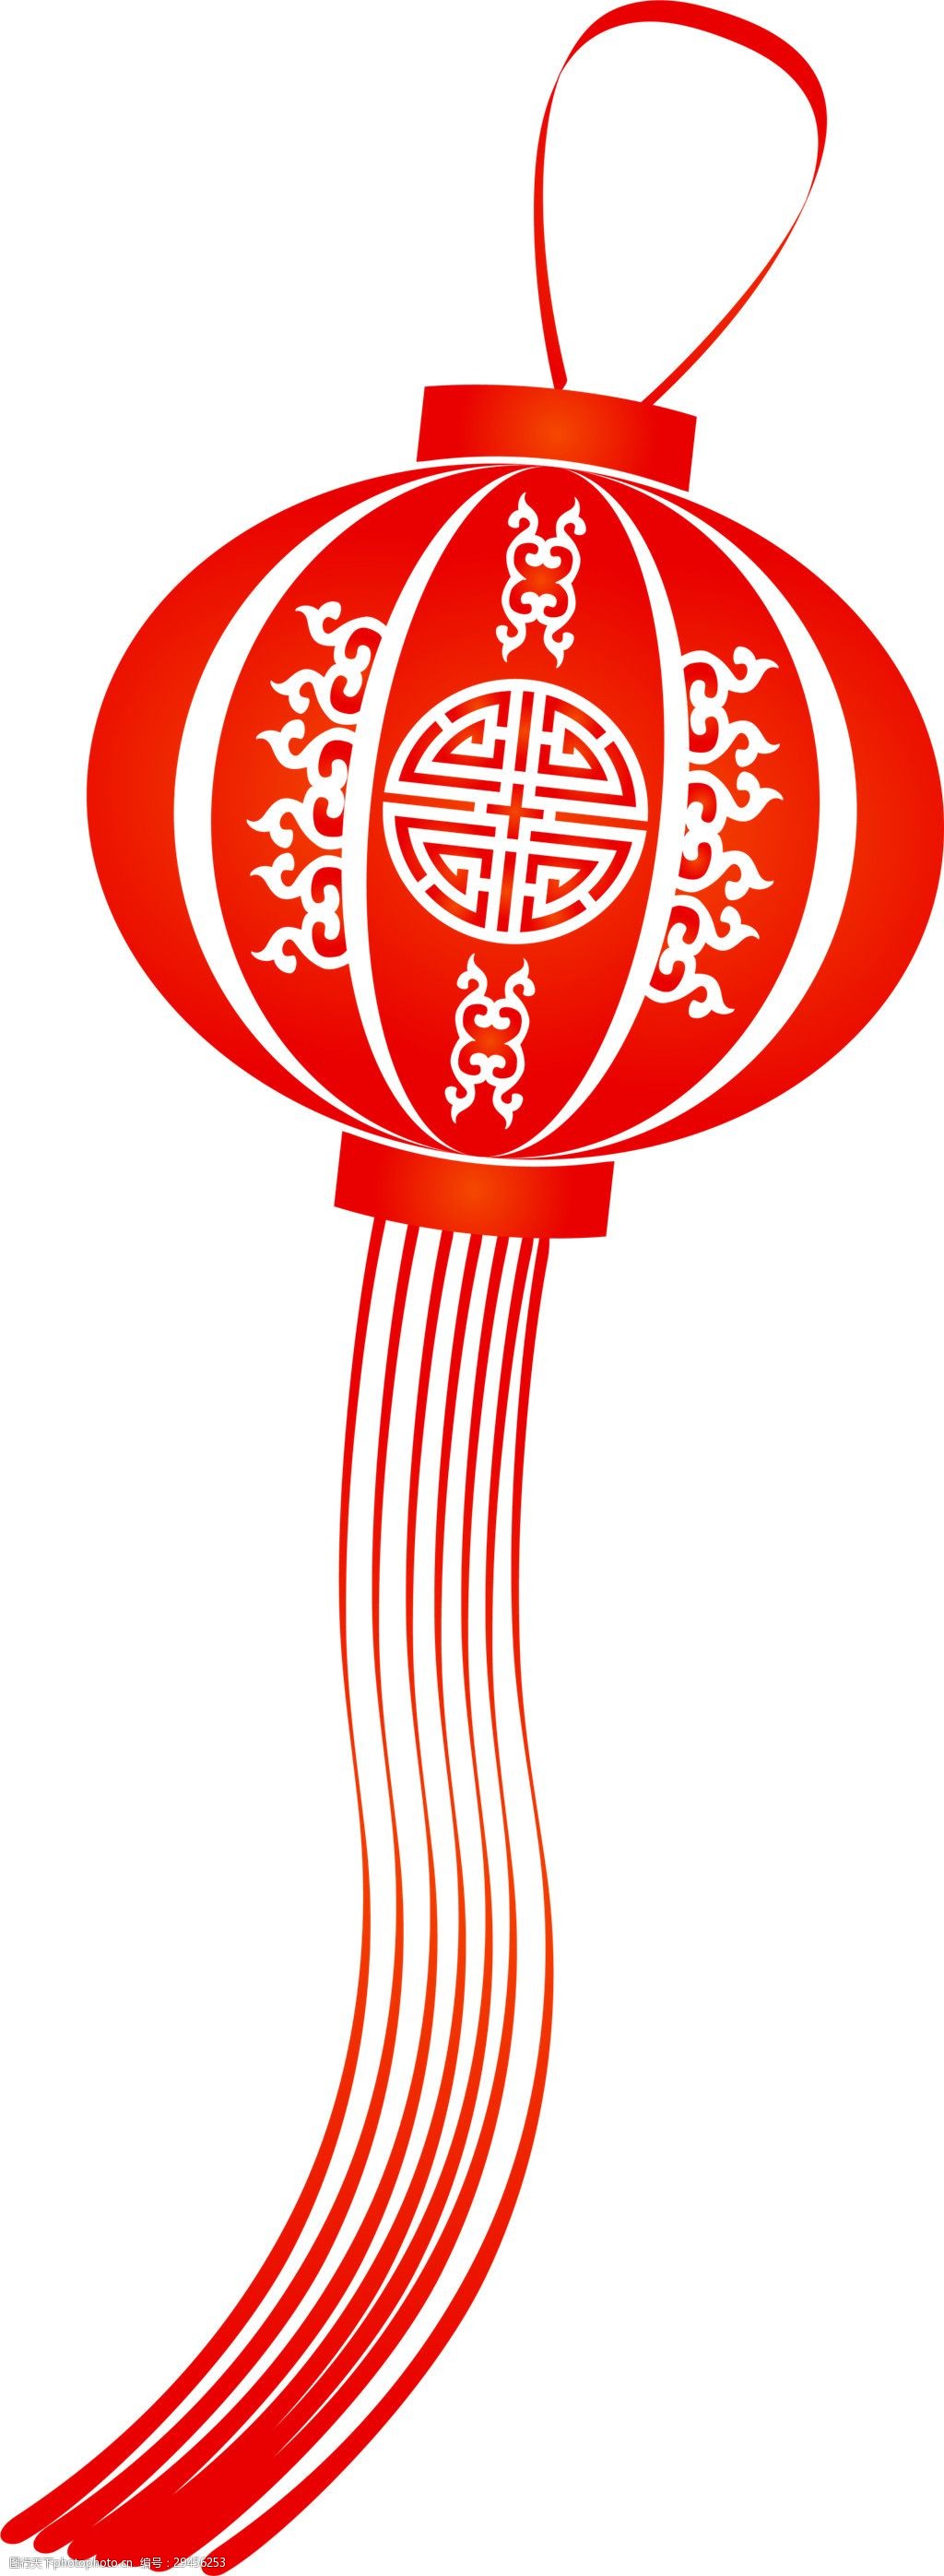 关键词:中国风欢度新春红色灯笼节日元素 白色花纹 红色灯笼 节日元素